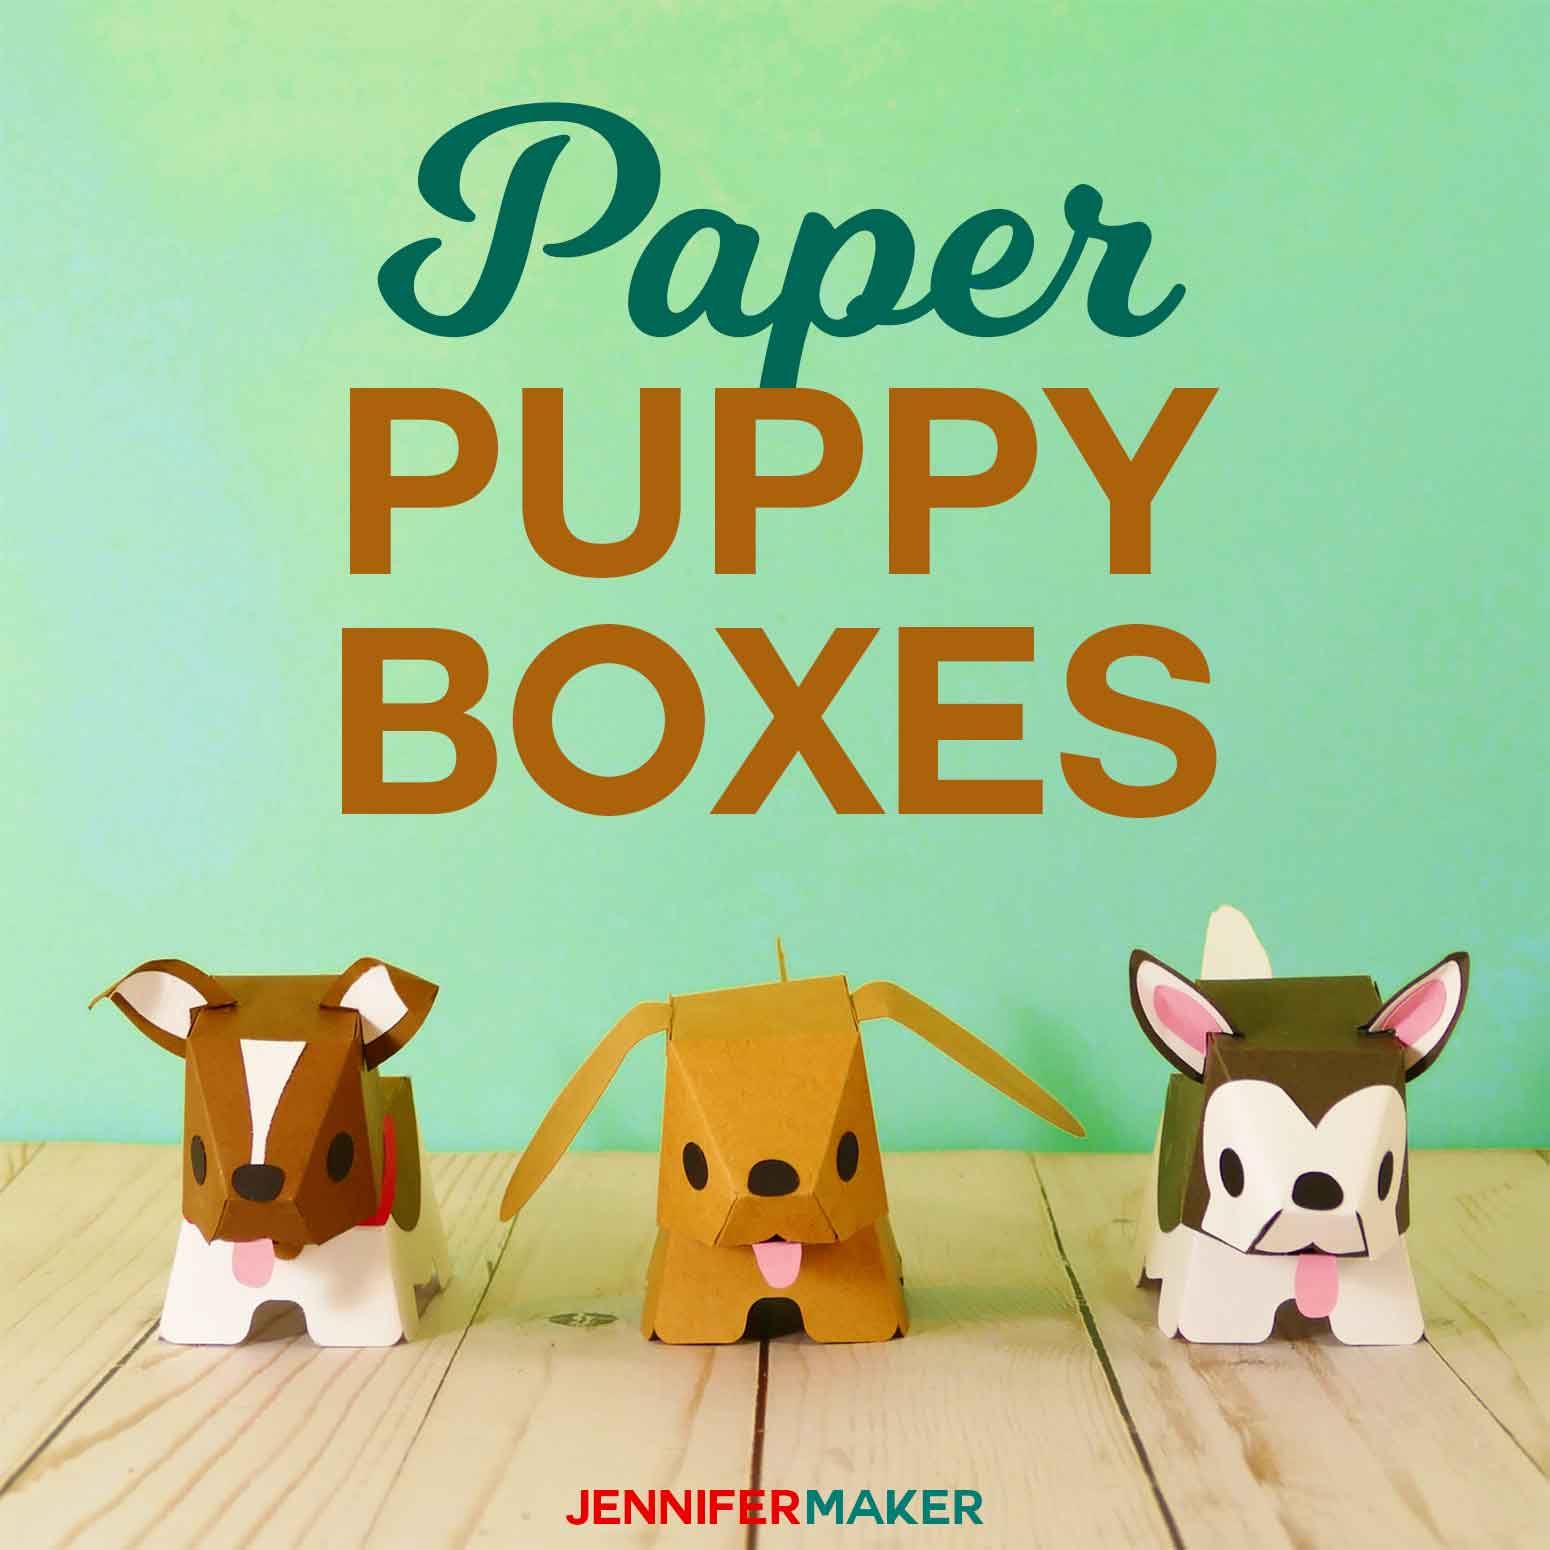 Make Paper Dog & Puppy Boxes - So Adorable! - Jennifer Maker